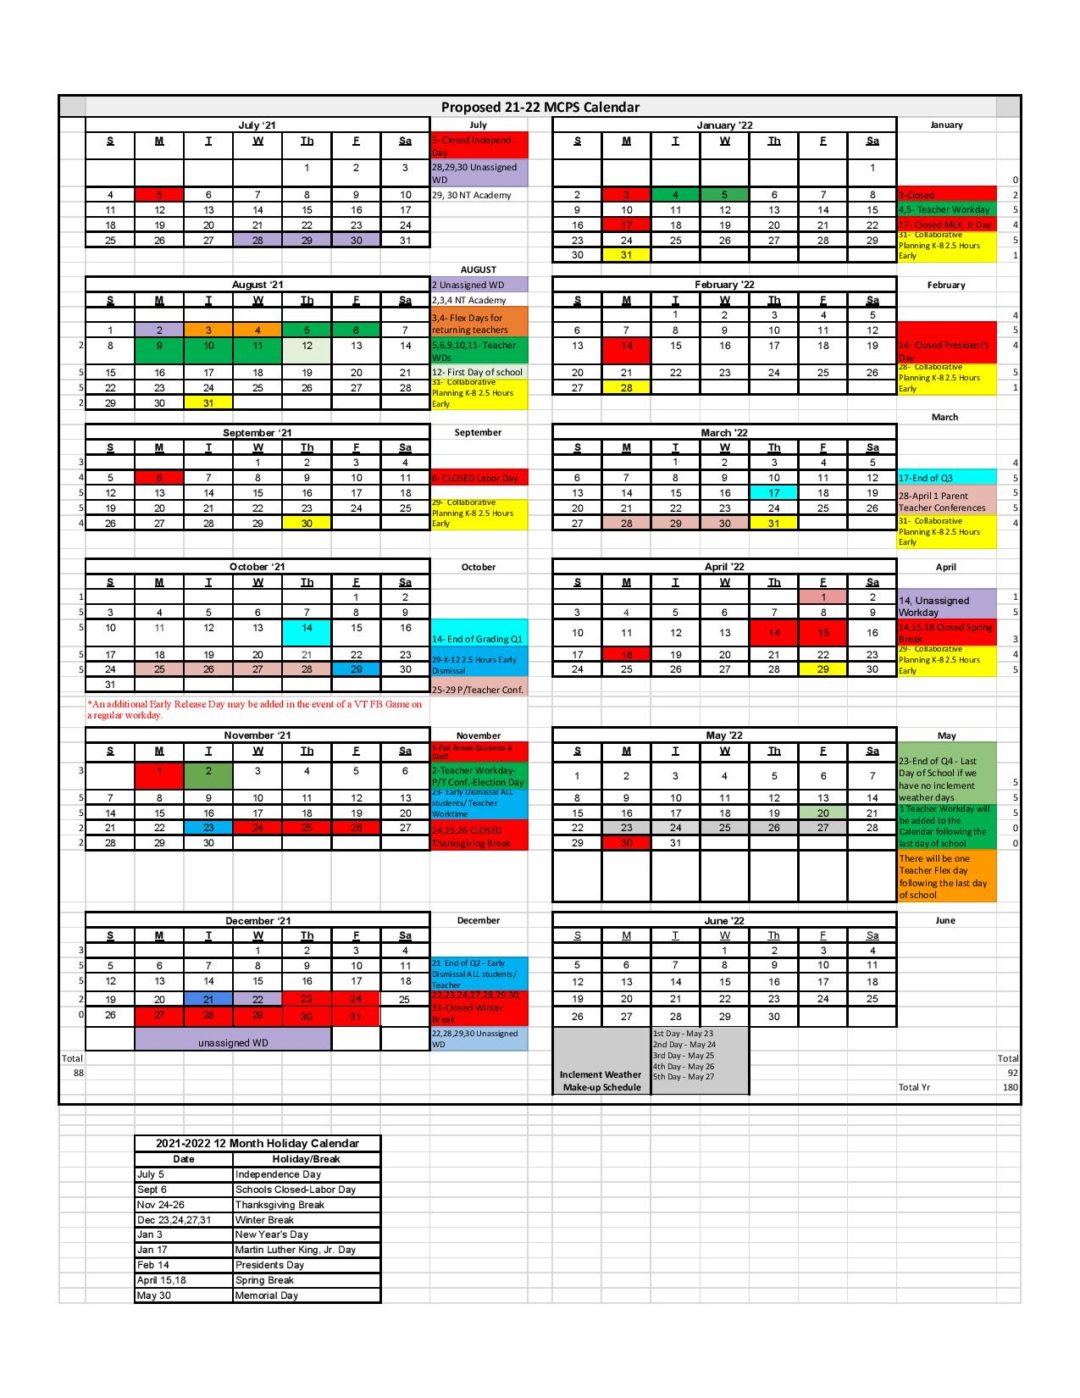 Montgomery County Schools Calendar 2021-2022 in PDF